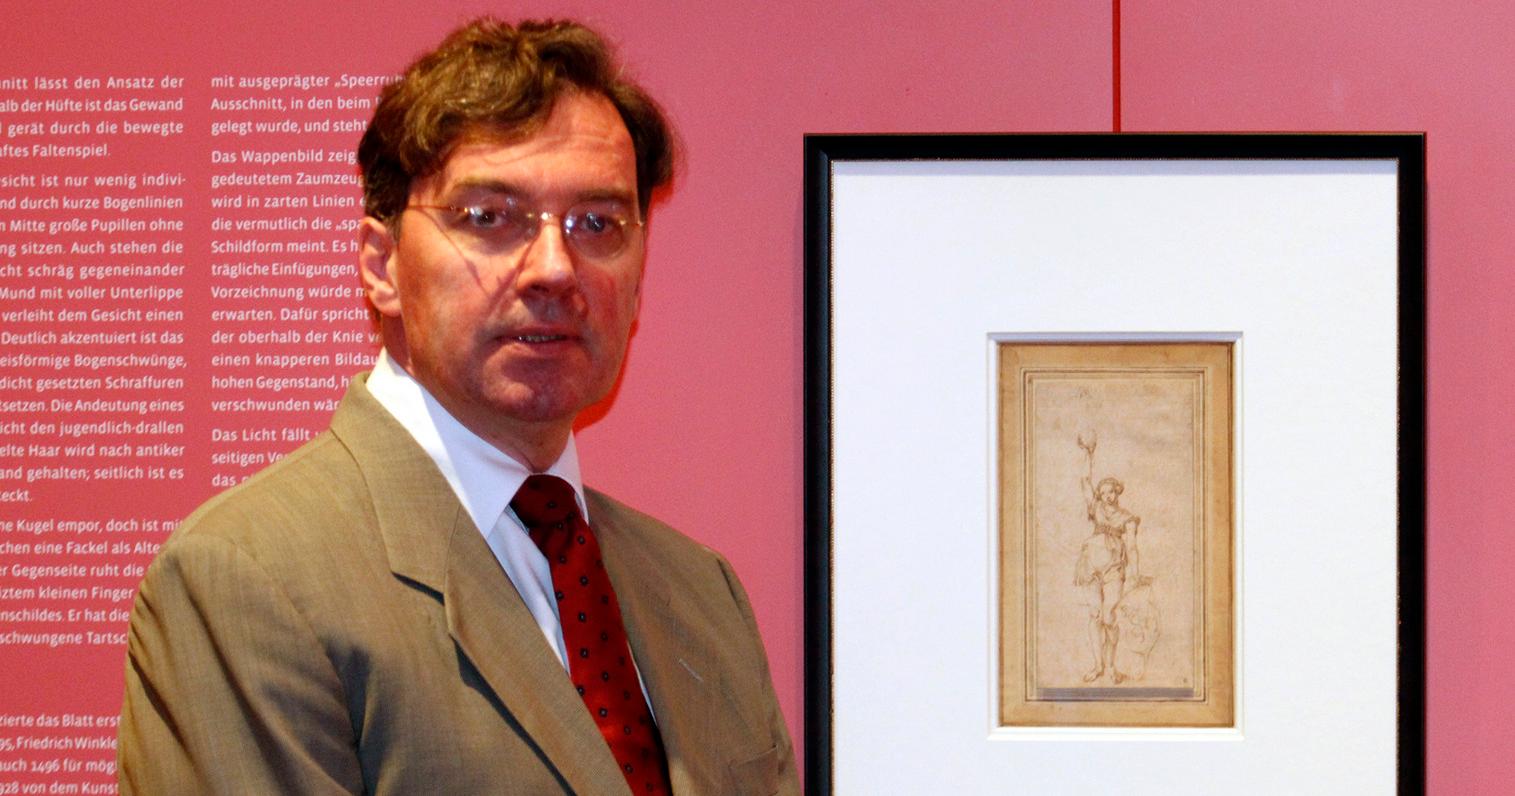 Dürer-Experte Dr. Thomas Schauerte präsentierte am Donnerstag die Zeichnung "Mädchen mit Fackel" des Nürnberger Künstlers.